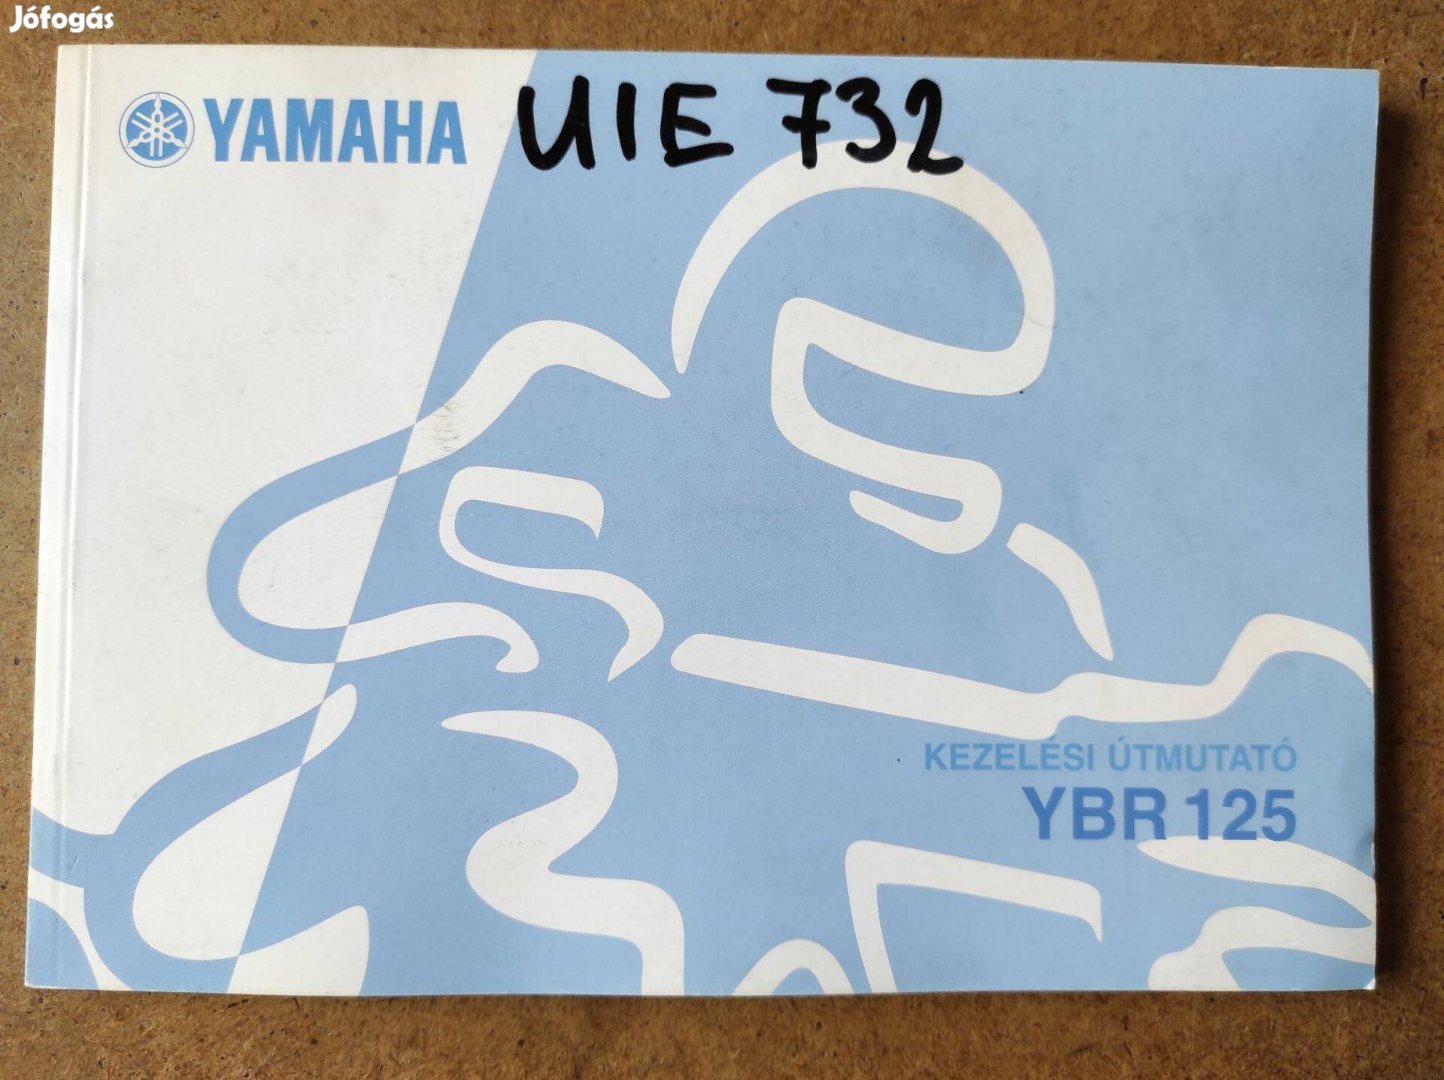 Yamaha Ybr 125 kezelési útmutató